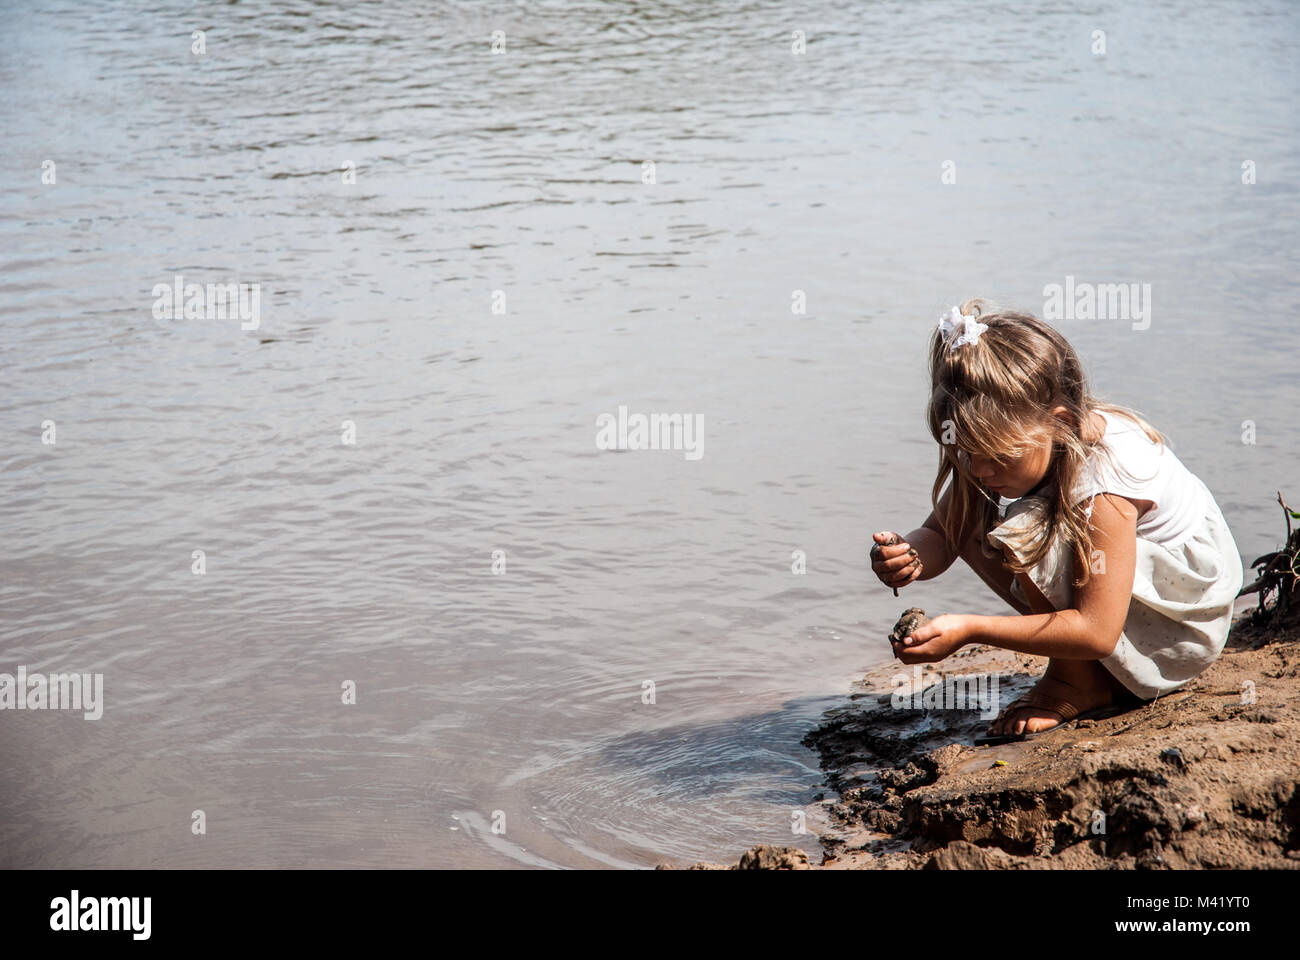 Une jeune fille blonde accroupi sur une berge et jouer avec la boue Banque D'Images